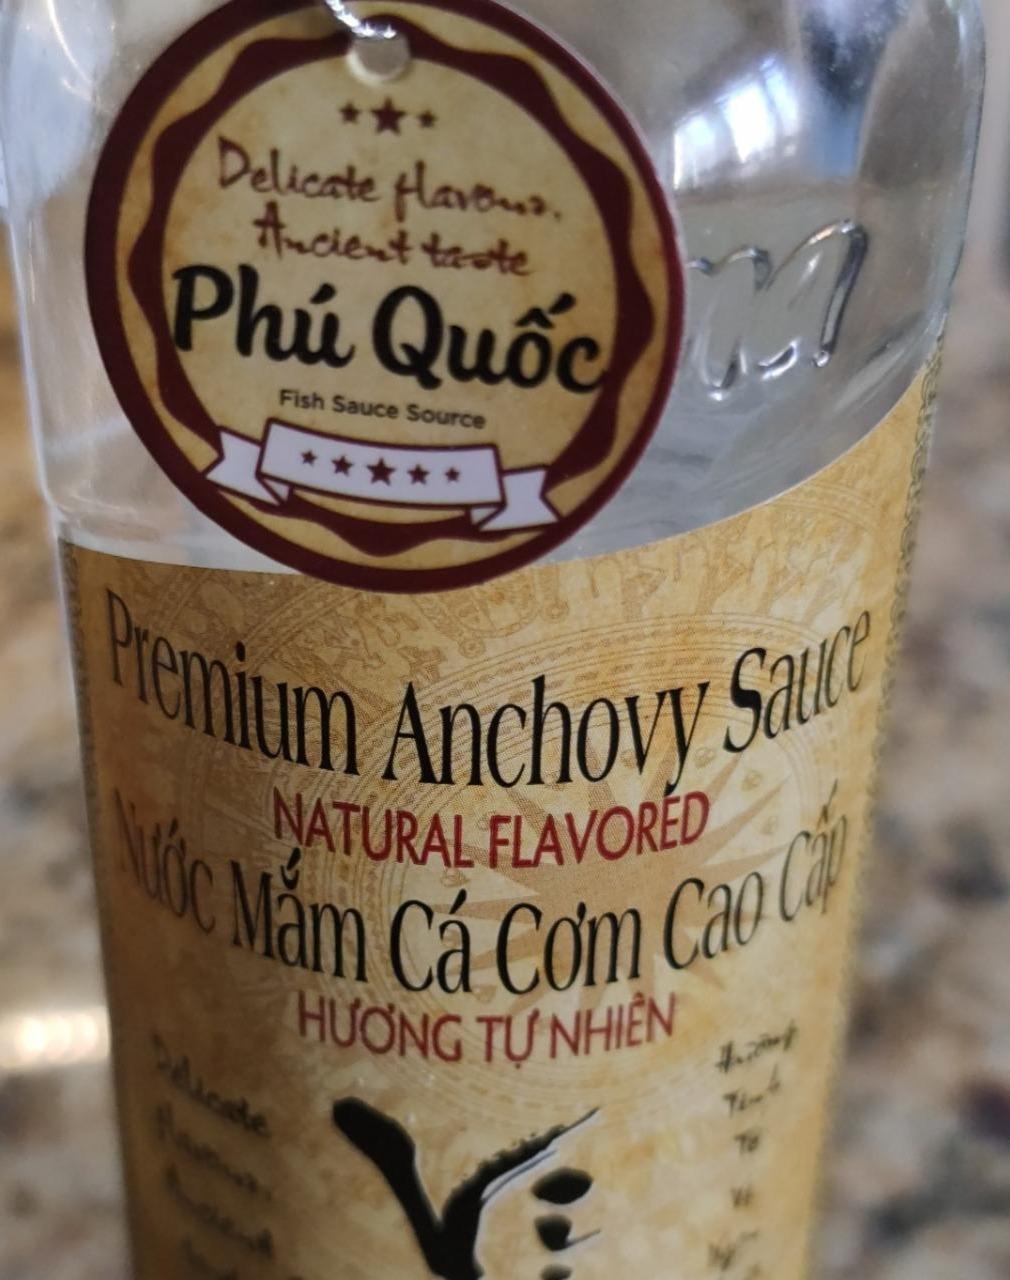 Fotografie - Premium Anchovy Sauce Phú Quốc